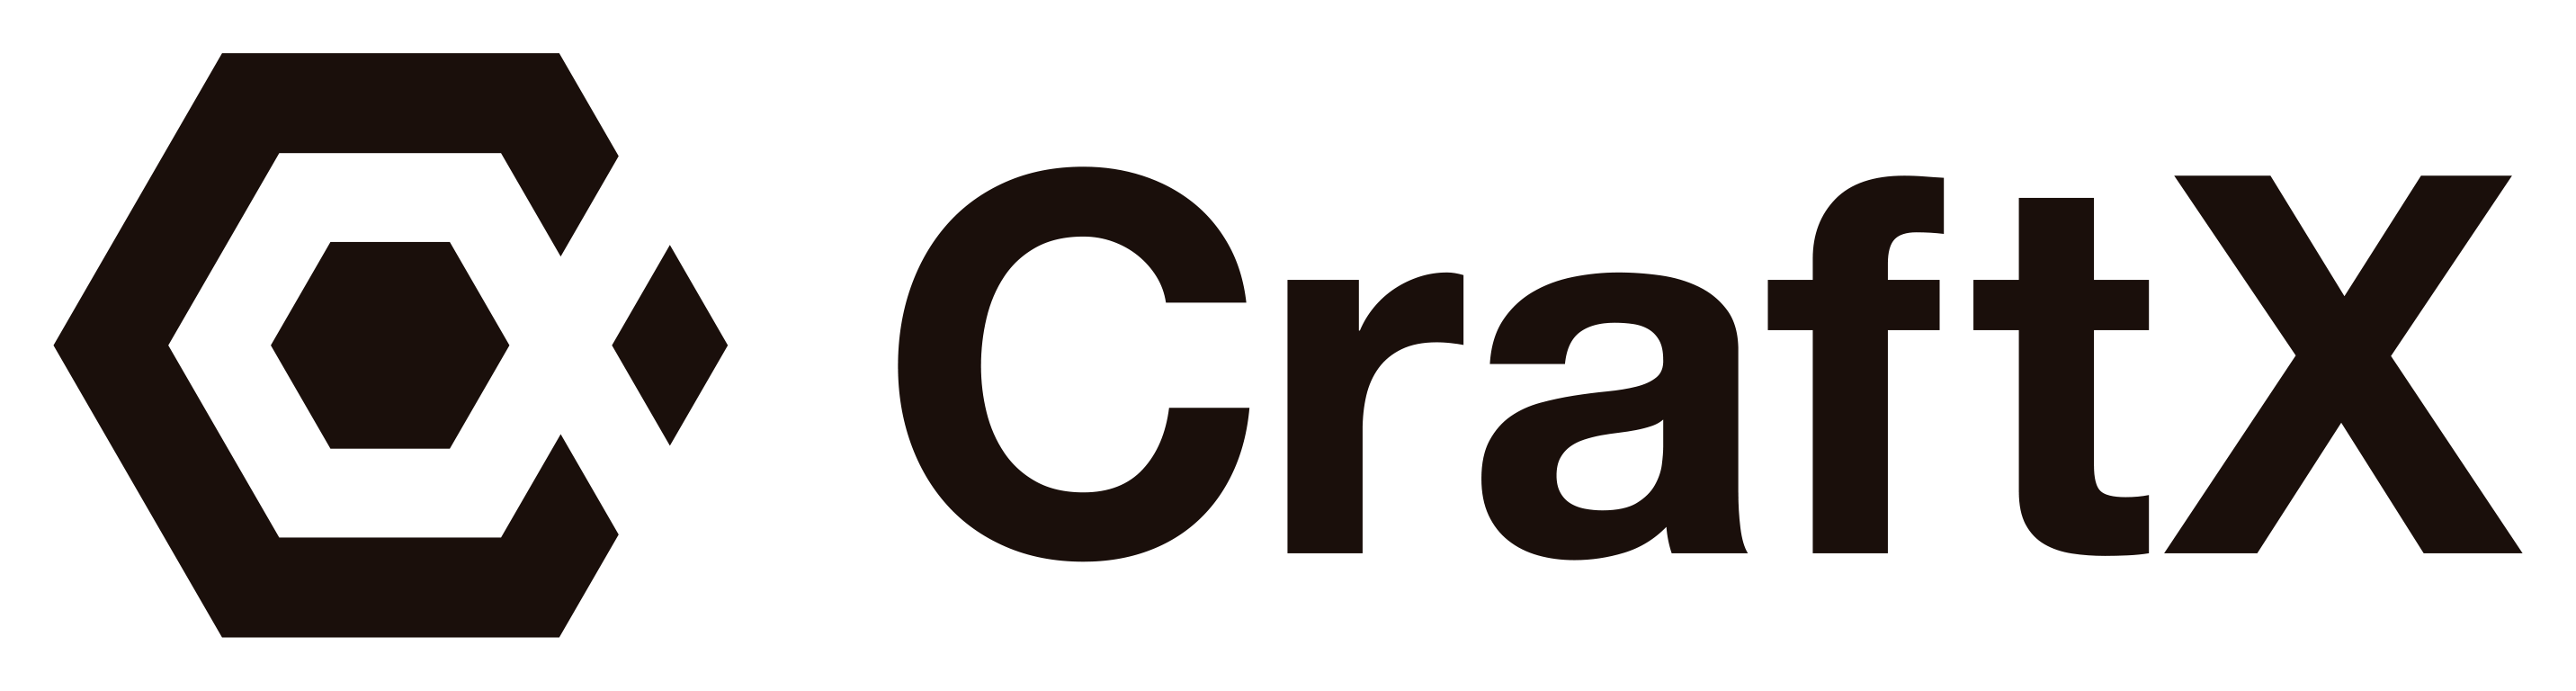 CraftX